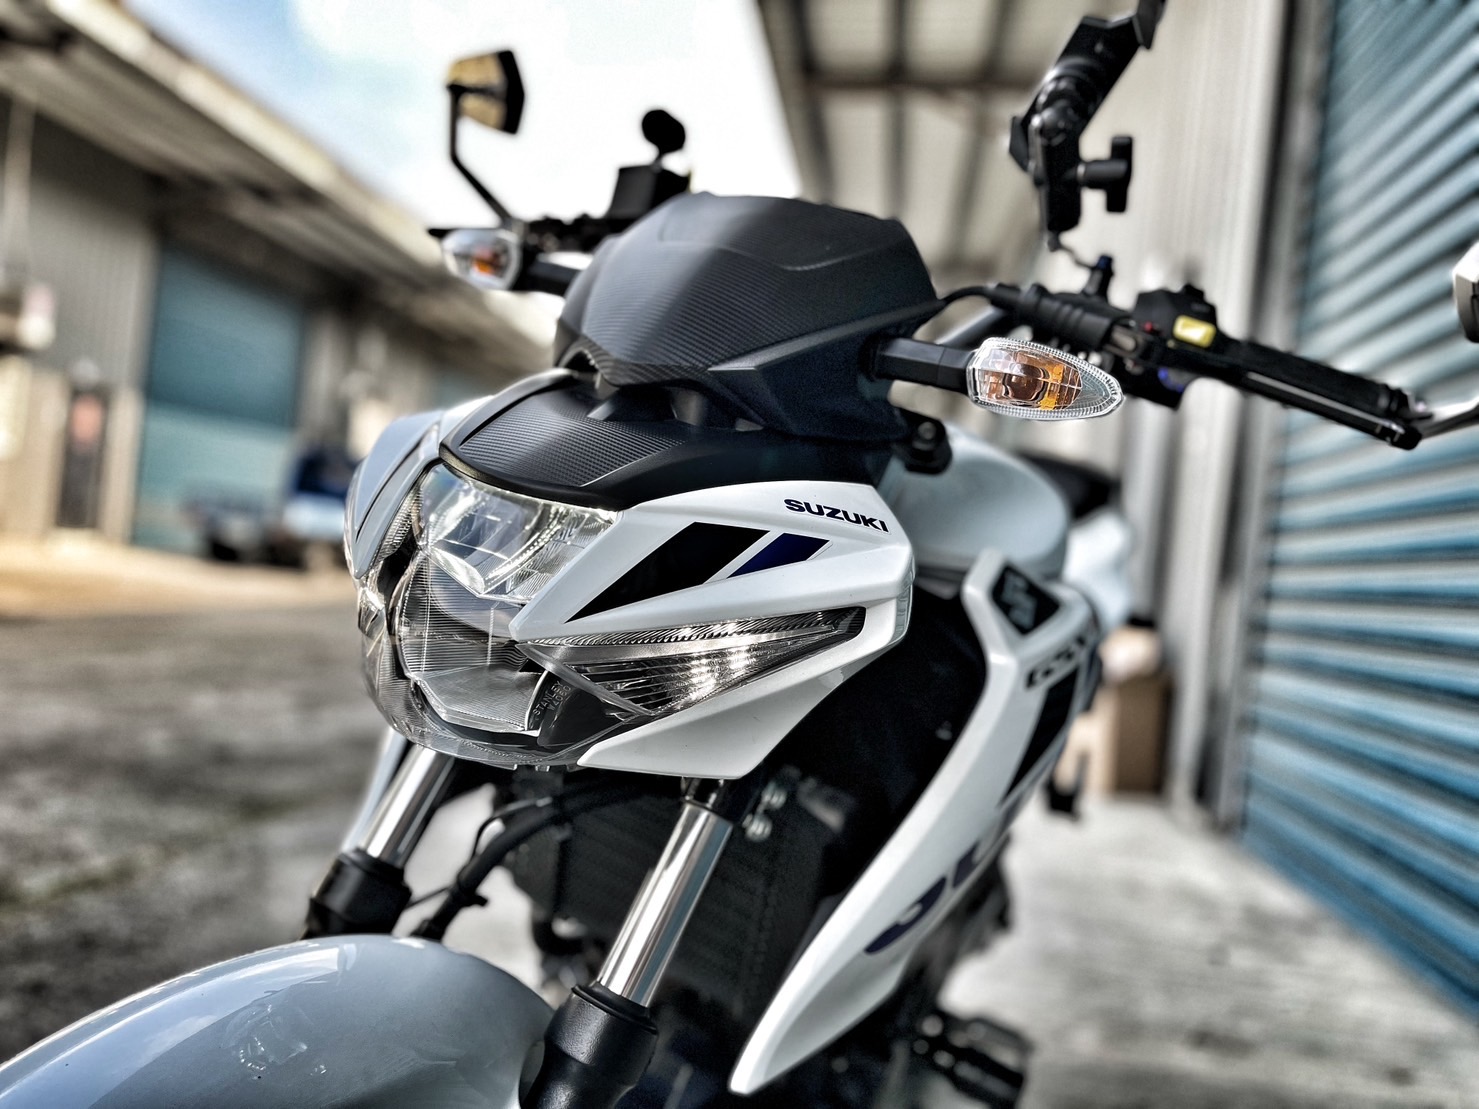 【小資族二手重機買賣】SUZUKI GSX-S150 - 「Webike-摩托車市」 白色系 里程保證 超多改裝 小資族二手重機買賣